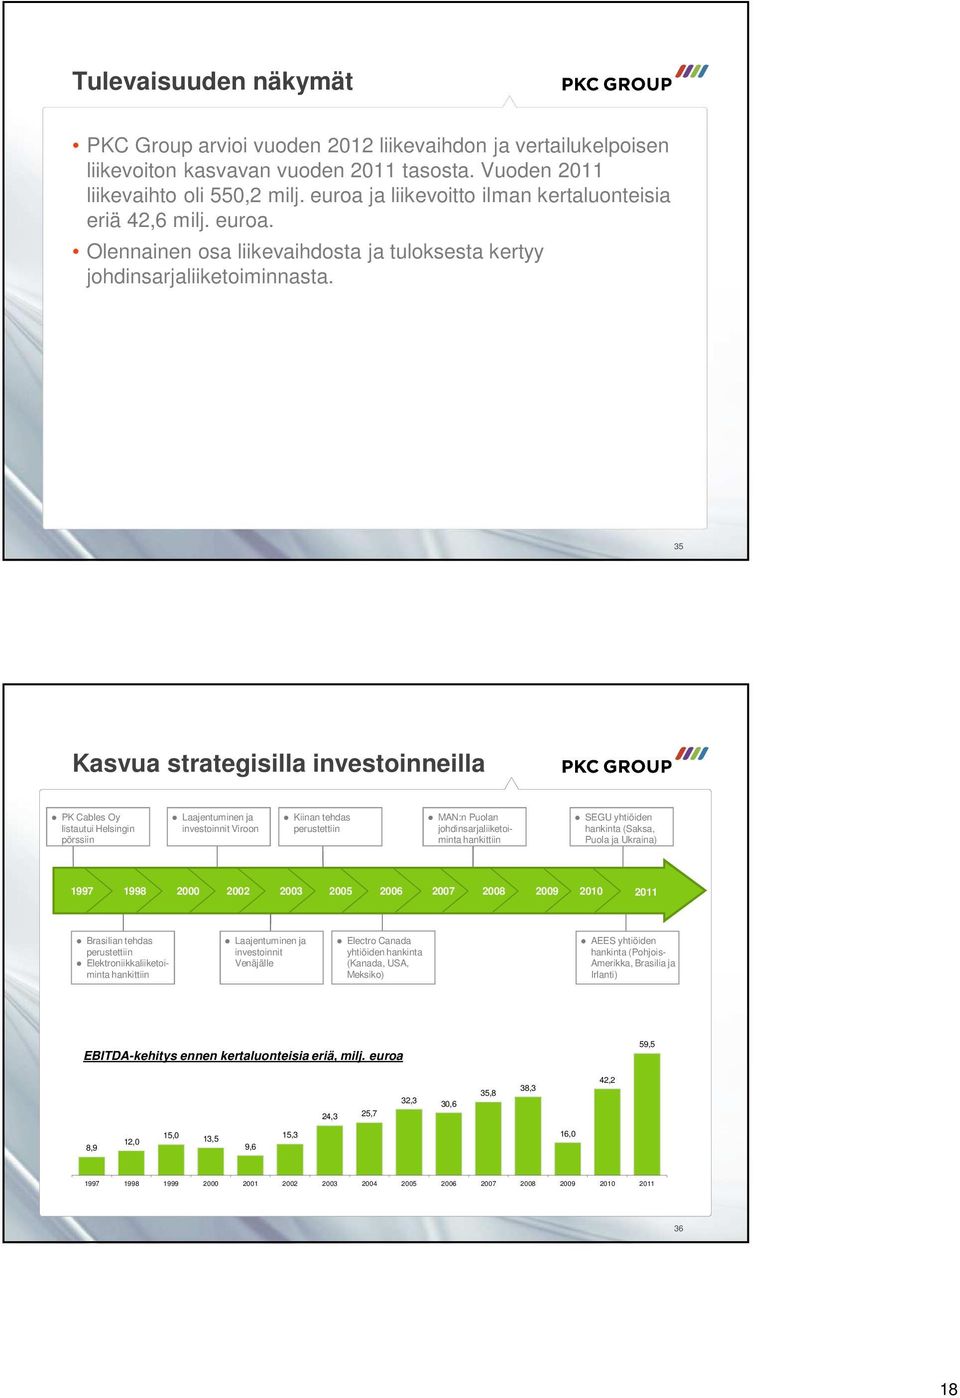 35 Kasvua strategisilla investoinneilla PK Cables Oy listautui Helsingin pörssiin Laajentuminen ja investoinnit Viroon Kiinan tehdas perustettiin MAN:n Puolan johdinsarjaliiketoiminta hankittiin SEGU